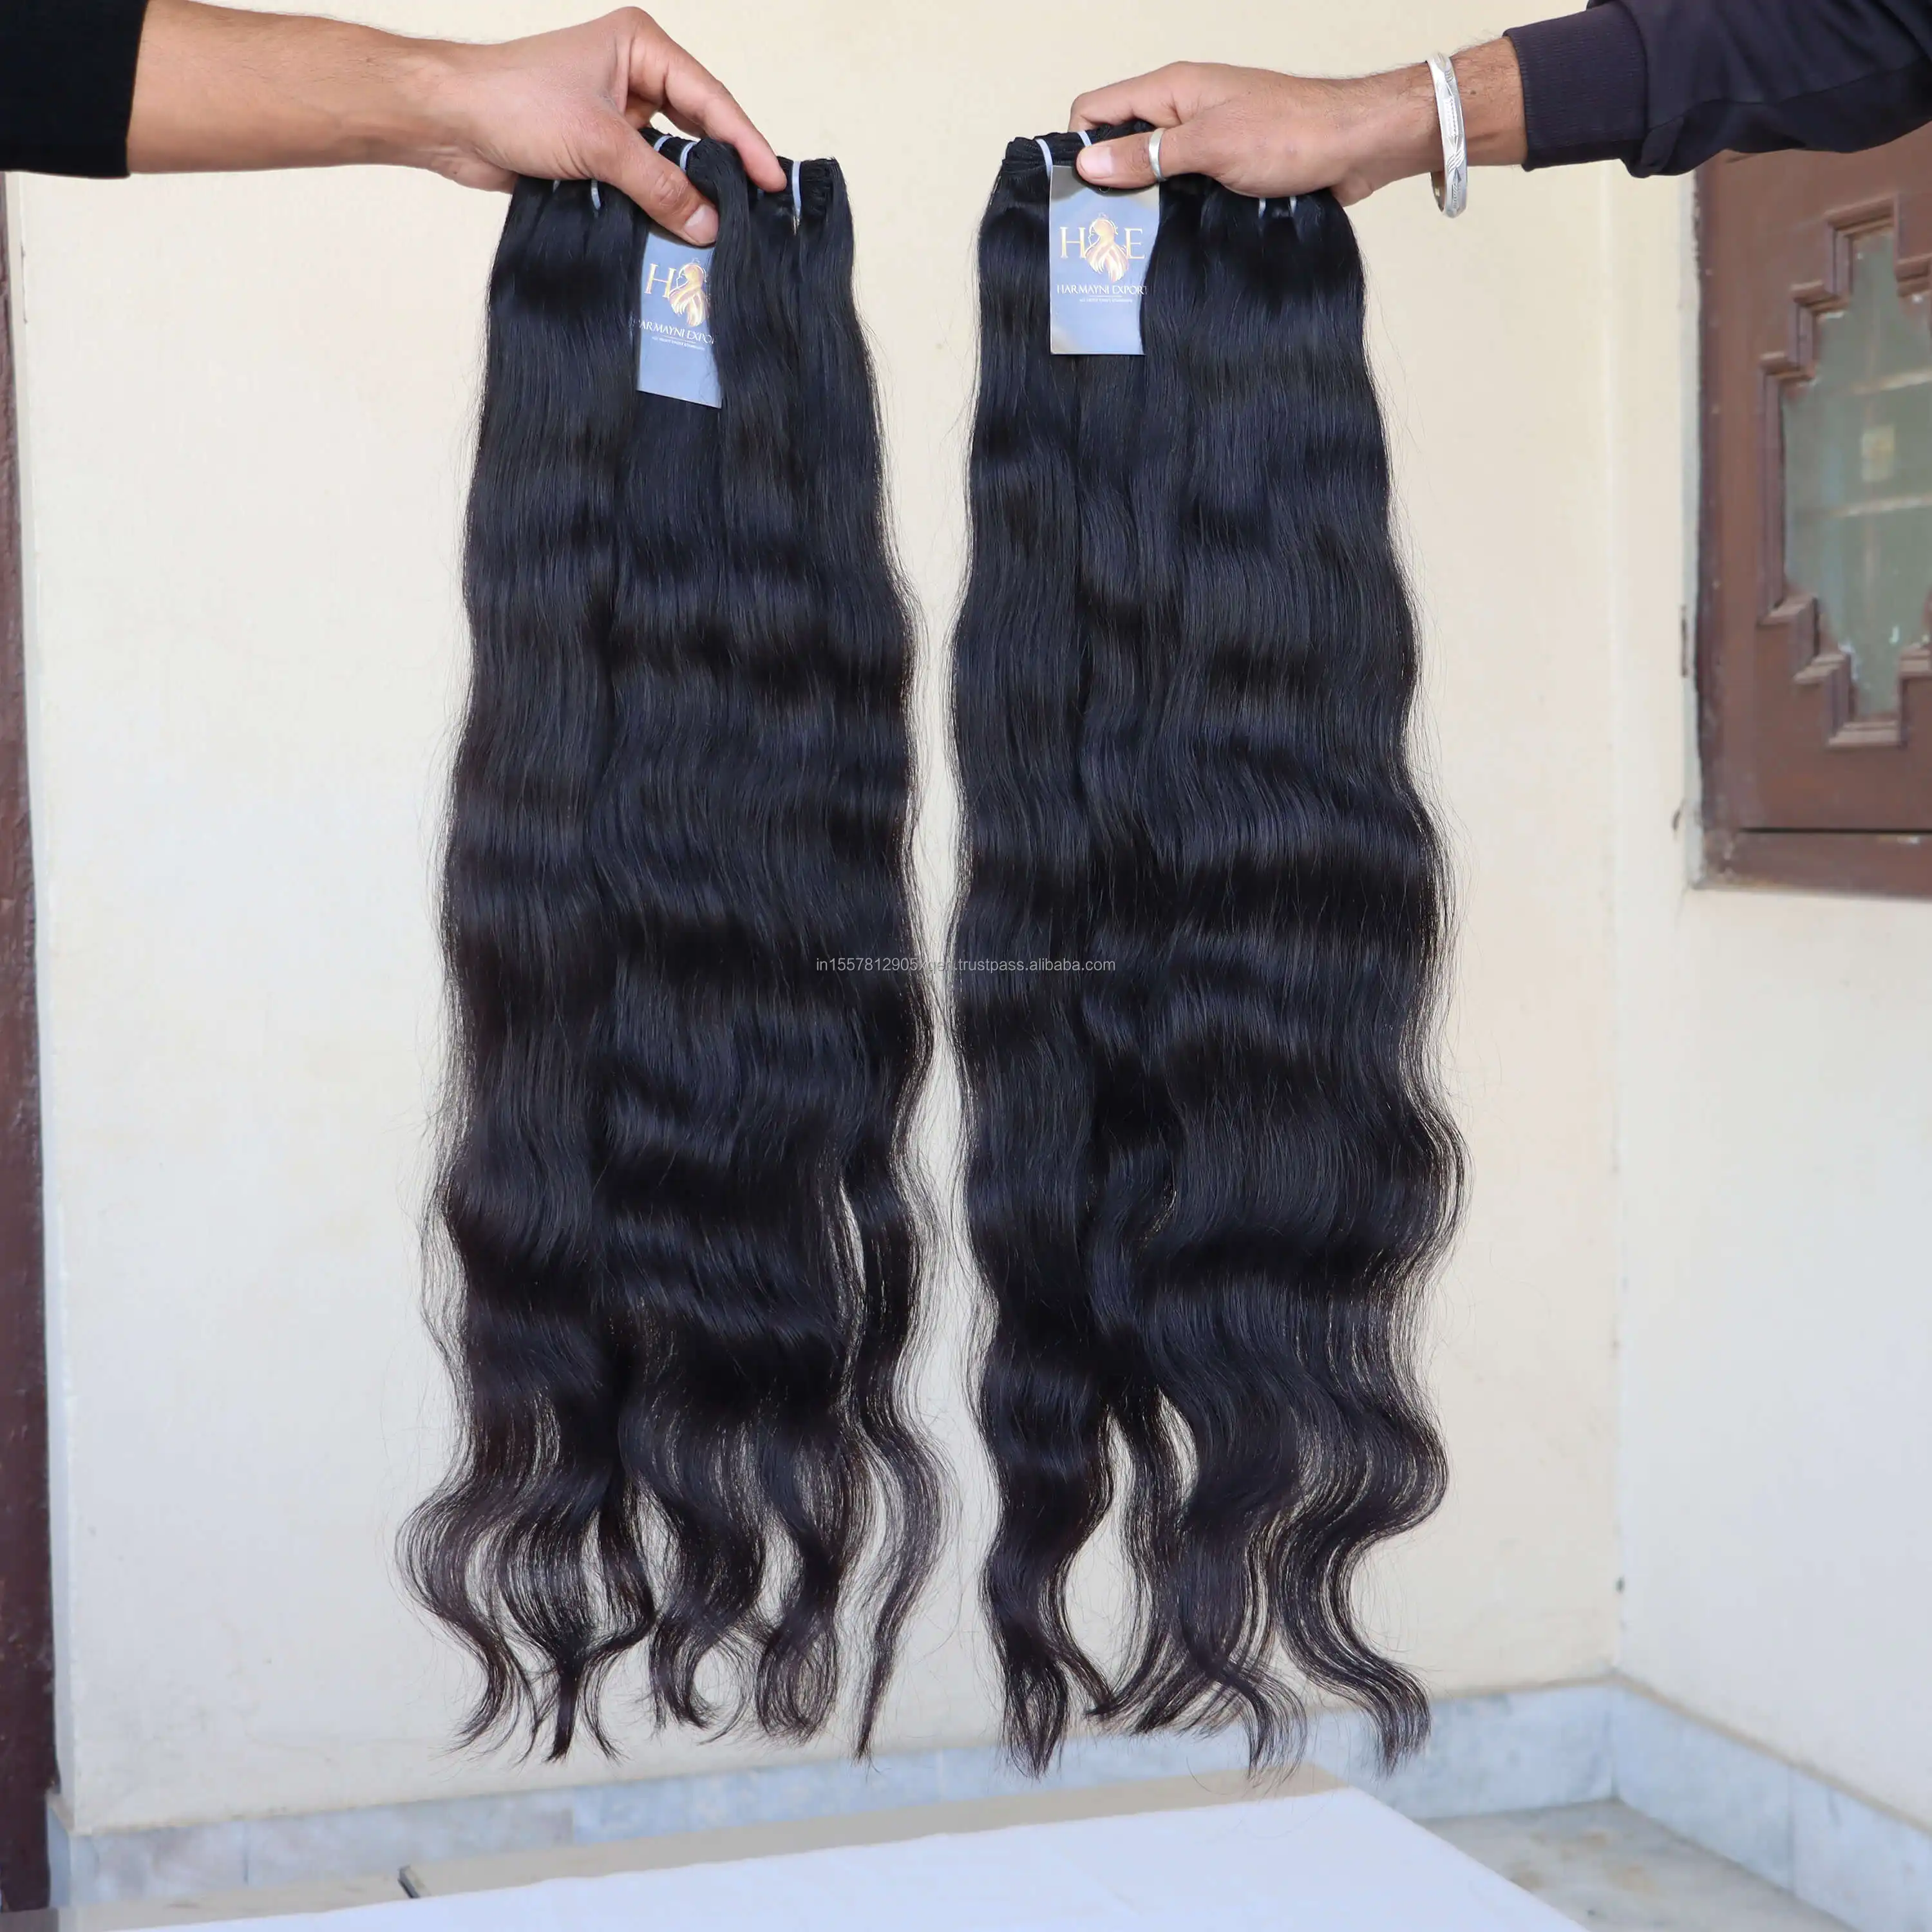 인도 원시 처리되지 않은 밍크 버진 자연 물결 모양의 스트레이트 헤어 직조 번들 도매 원시 대량 인도 인간의 머리카락 공급 업체